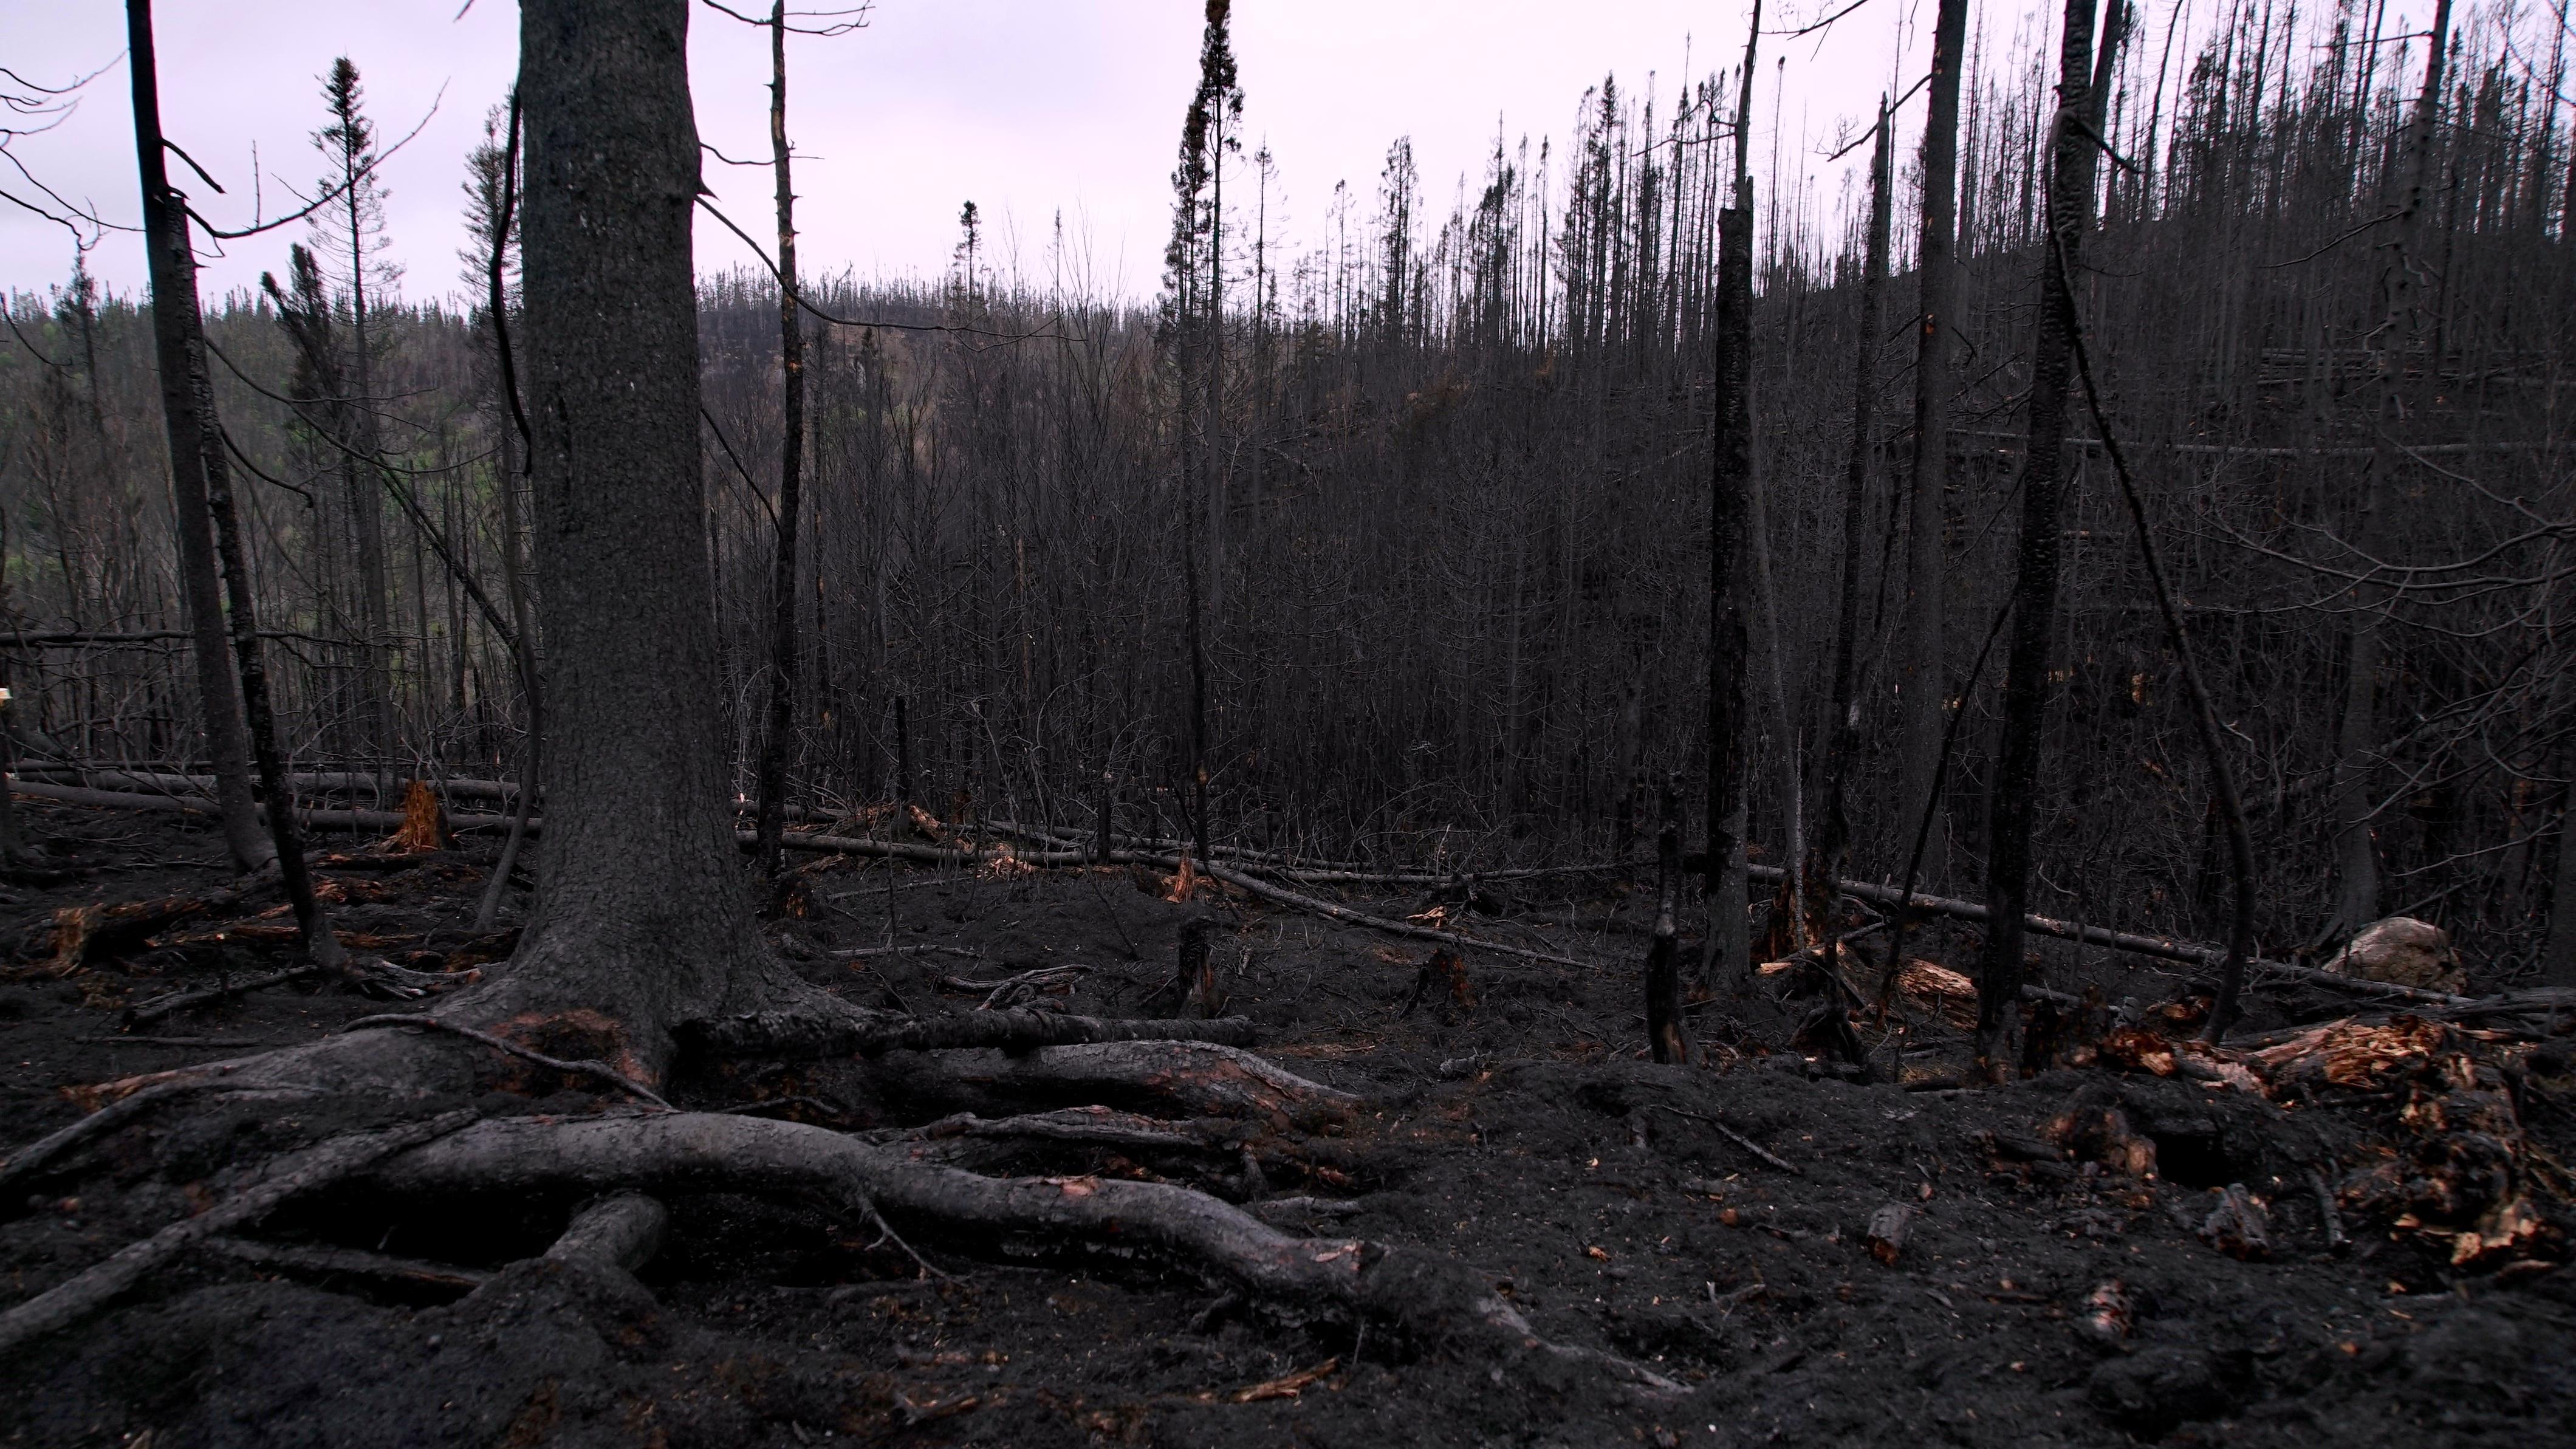 Ce que nous apprennent les forêts après des incendies
Ce que nous apprennent les forêts après des incendies